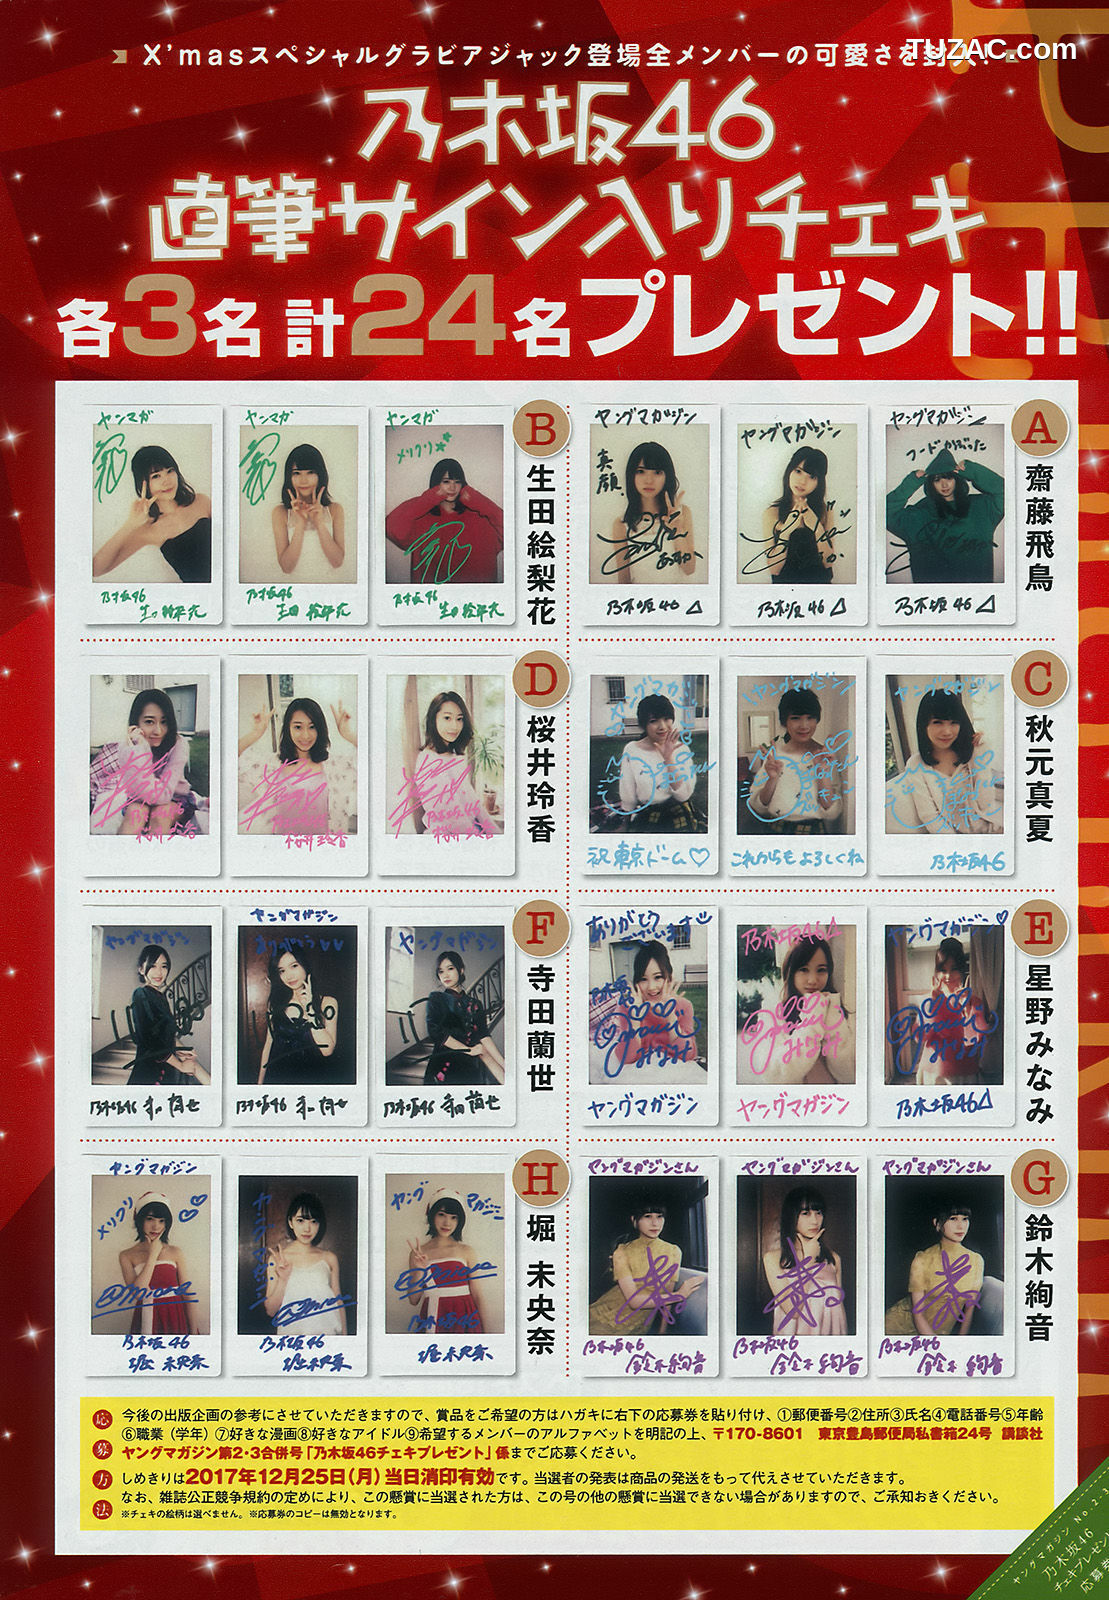 Young Magazine杂志写真_ Nogizaka46 乃木坂46 2018年No.02-03 写真杂志[17P]